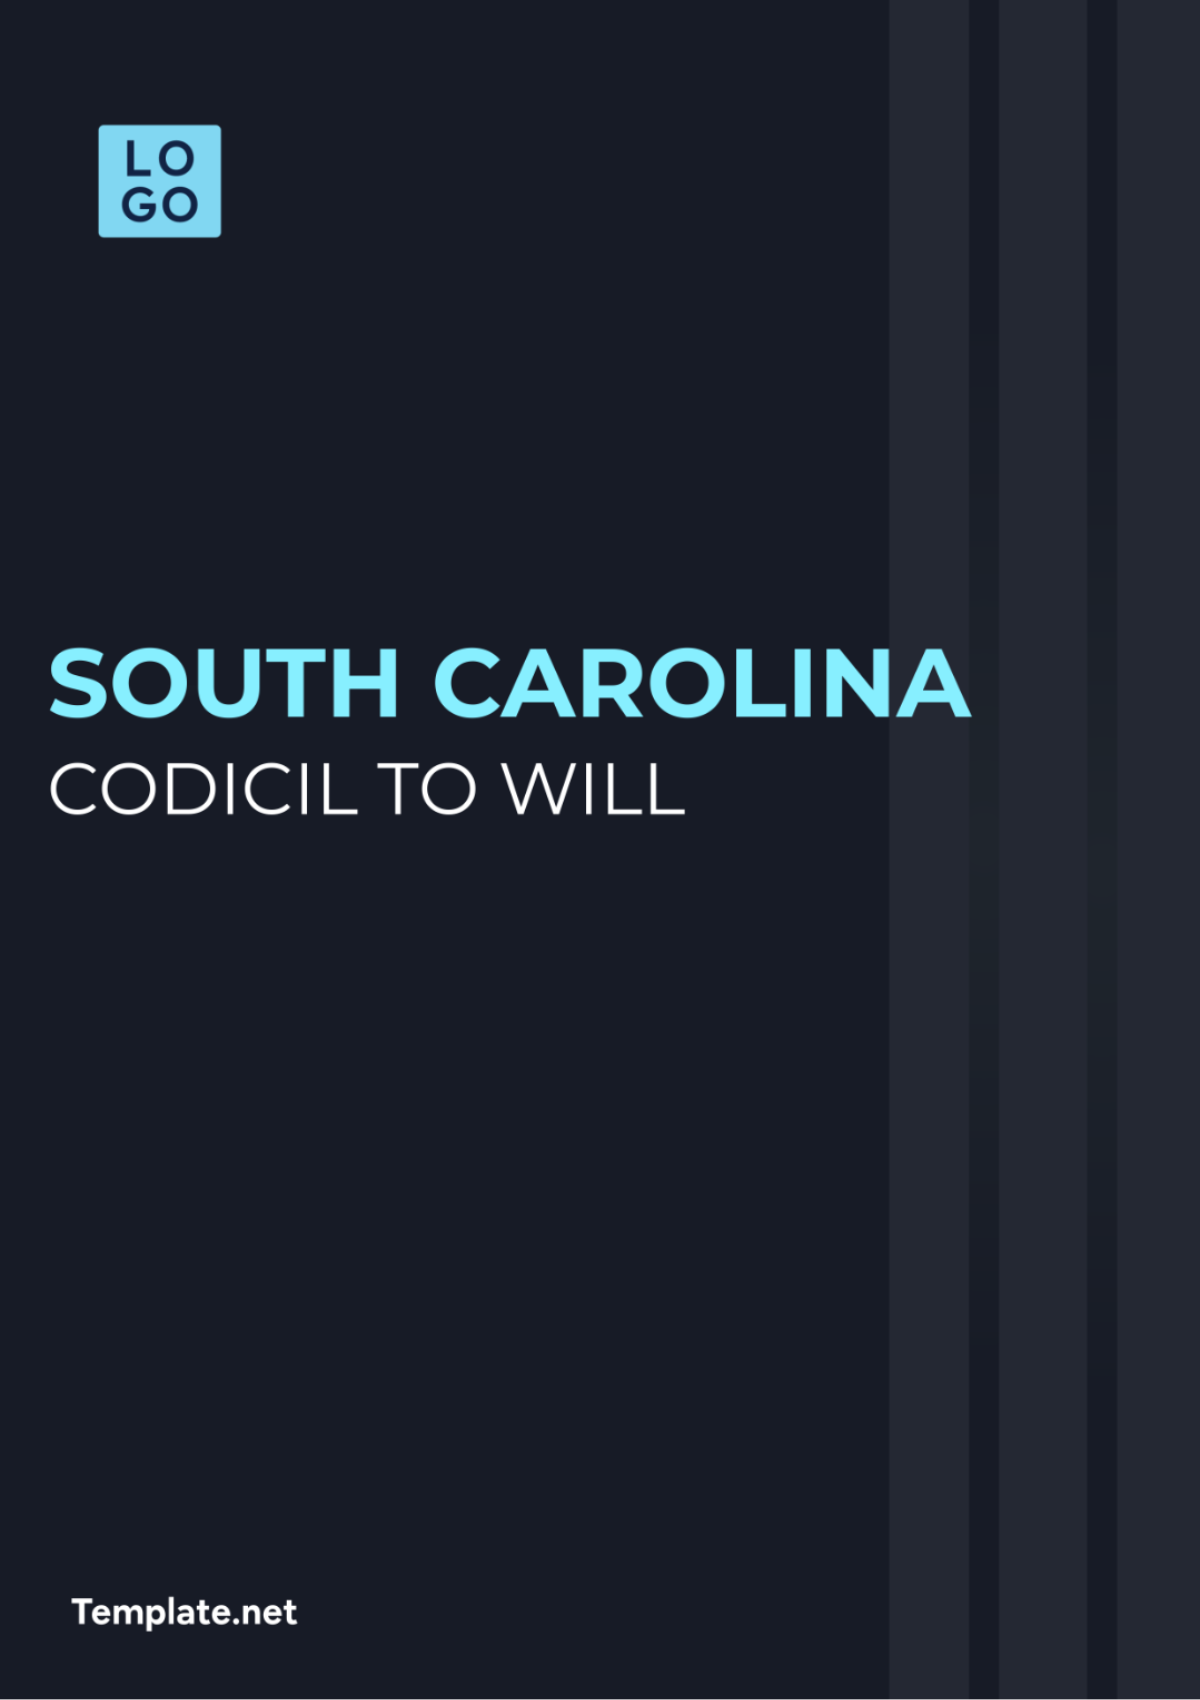 South Carolina Codicil to Will Template